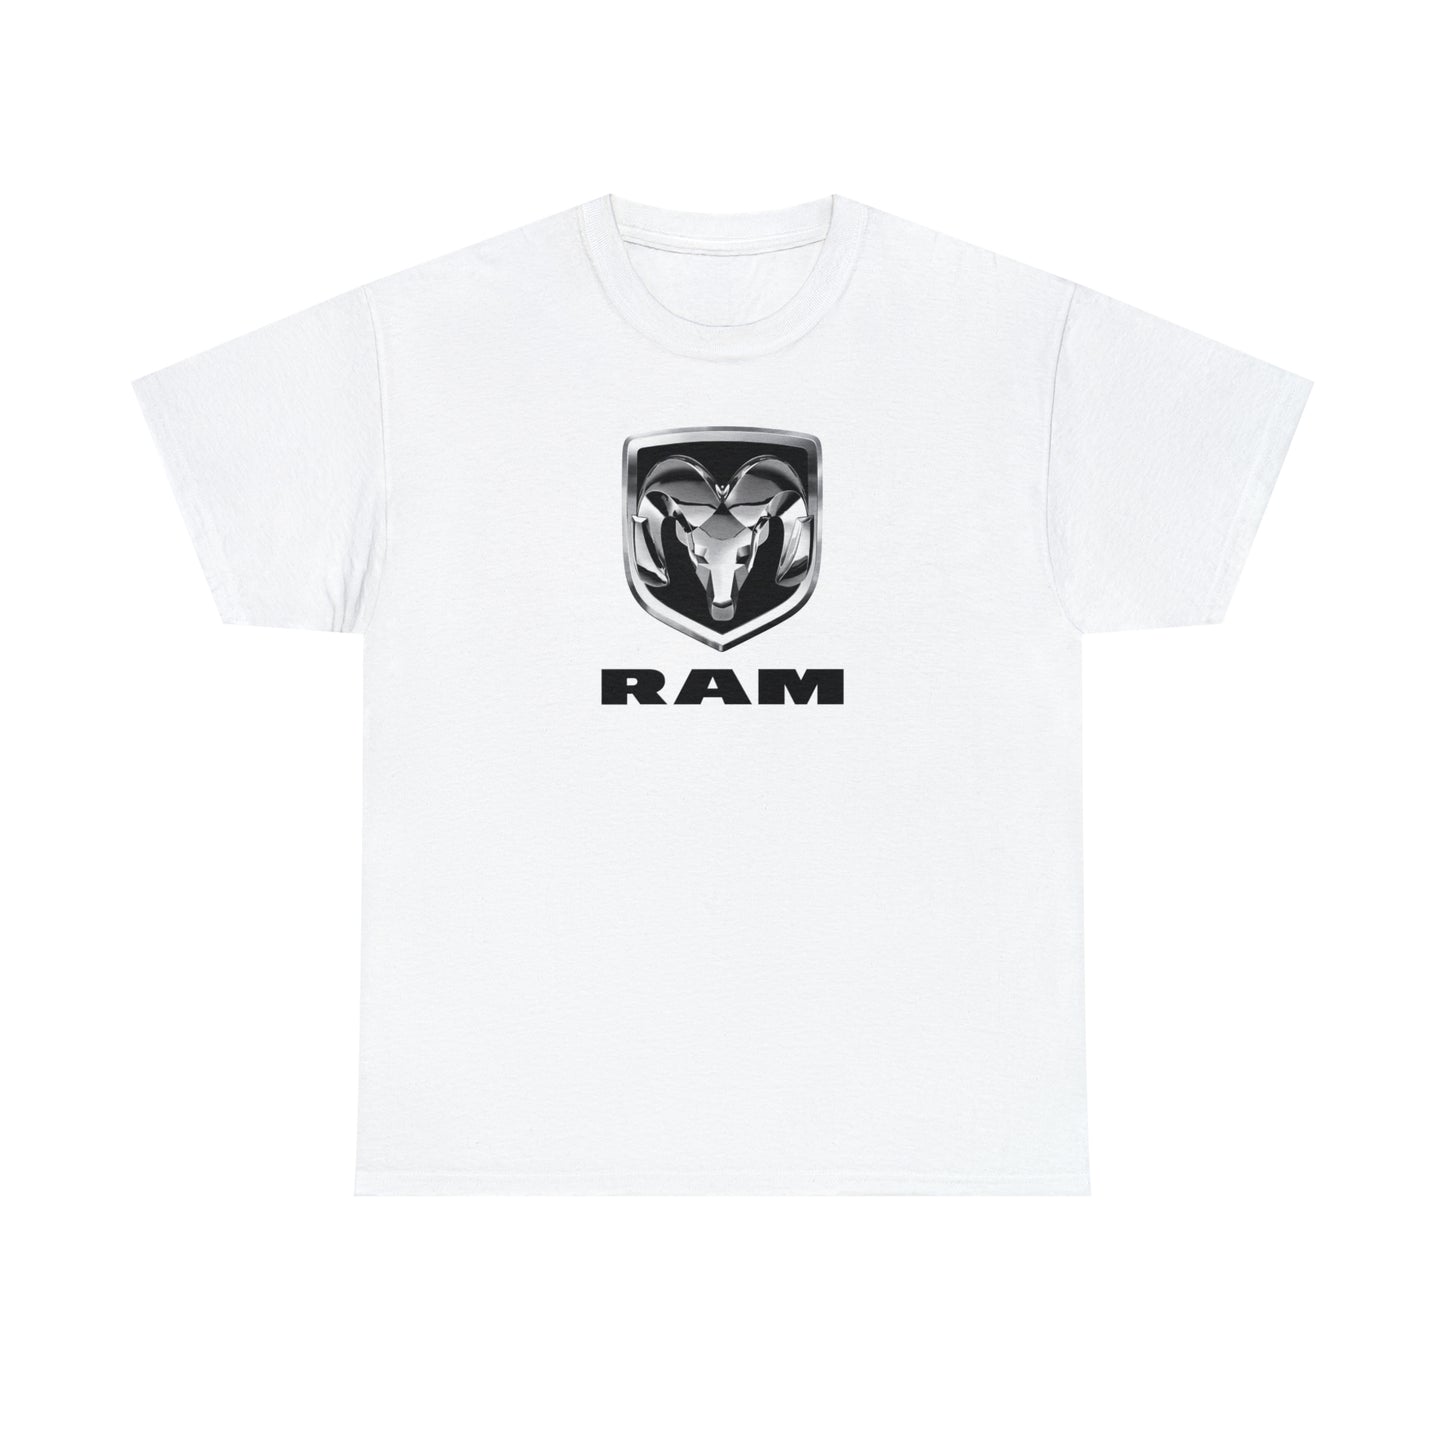 Ram T-Shirt